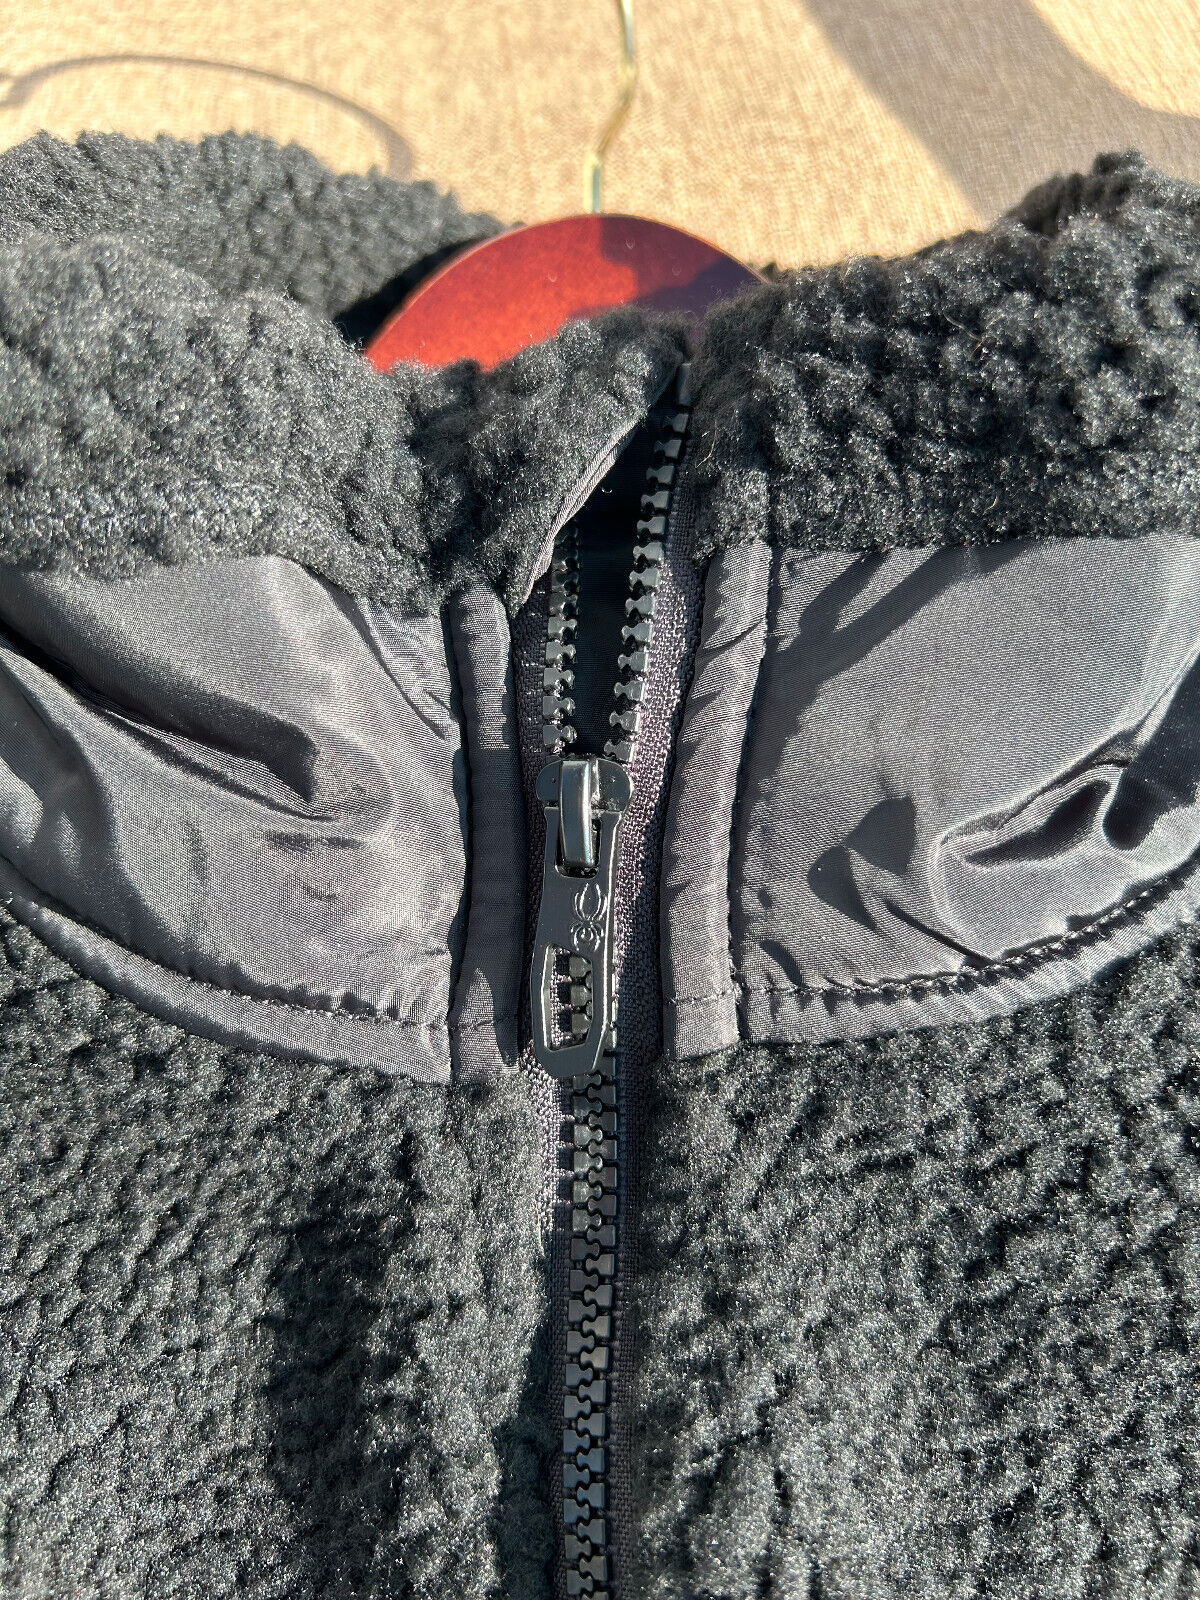 Spyder Sherpa Fleece Jacket Full-zip Black Mens Size L | eBay